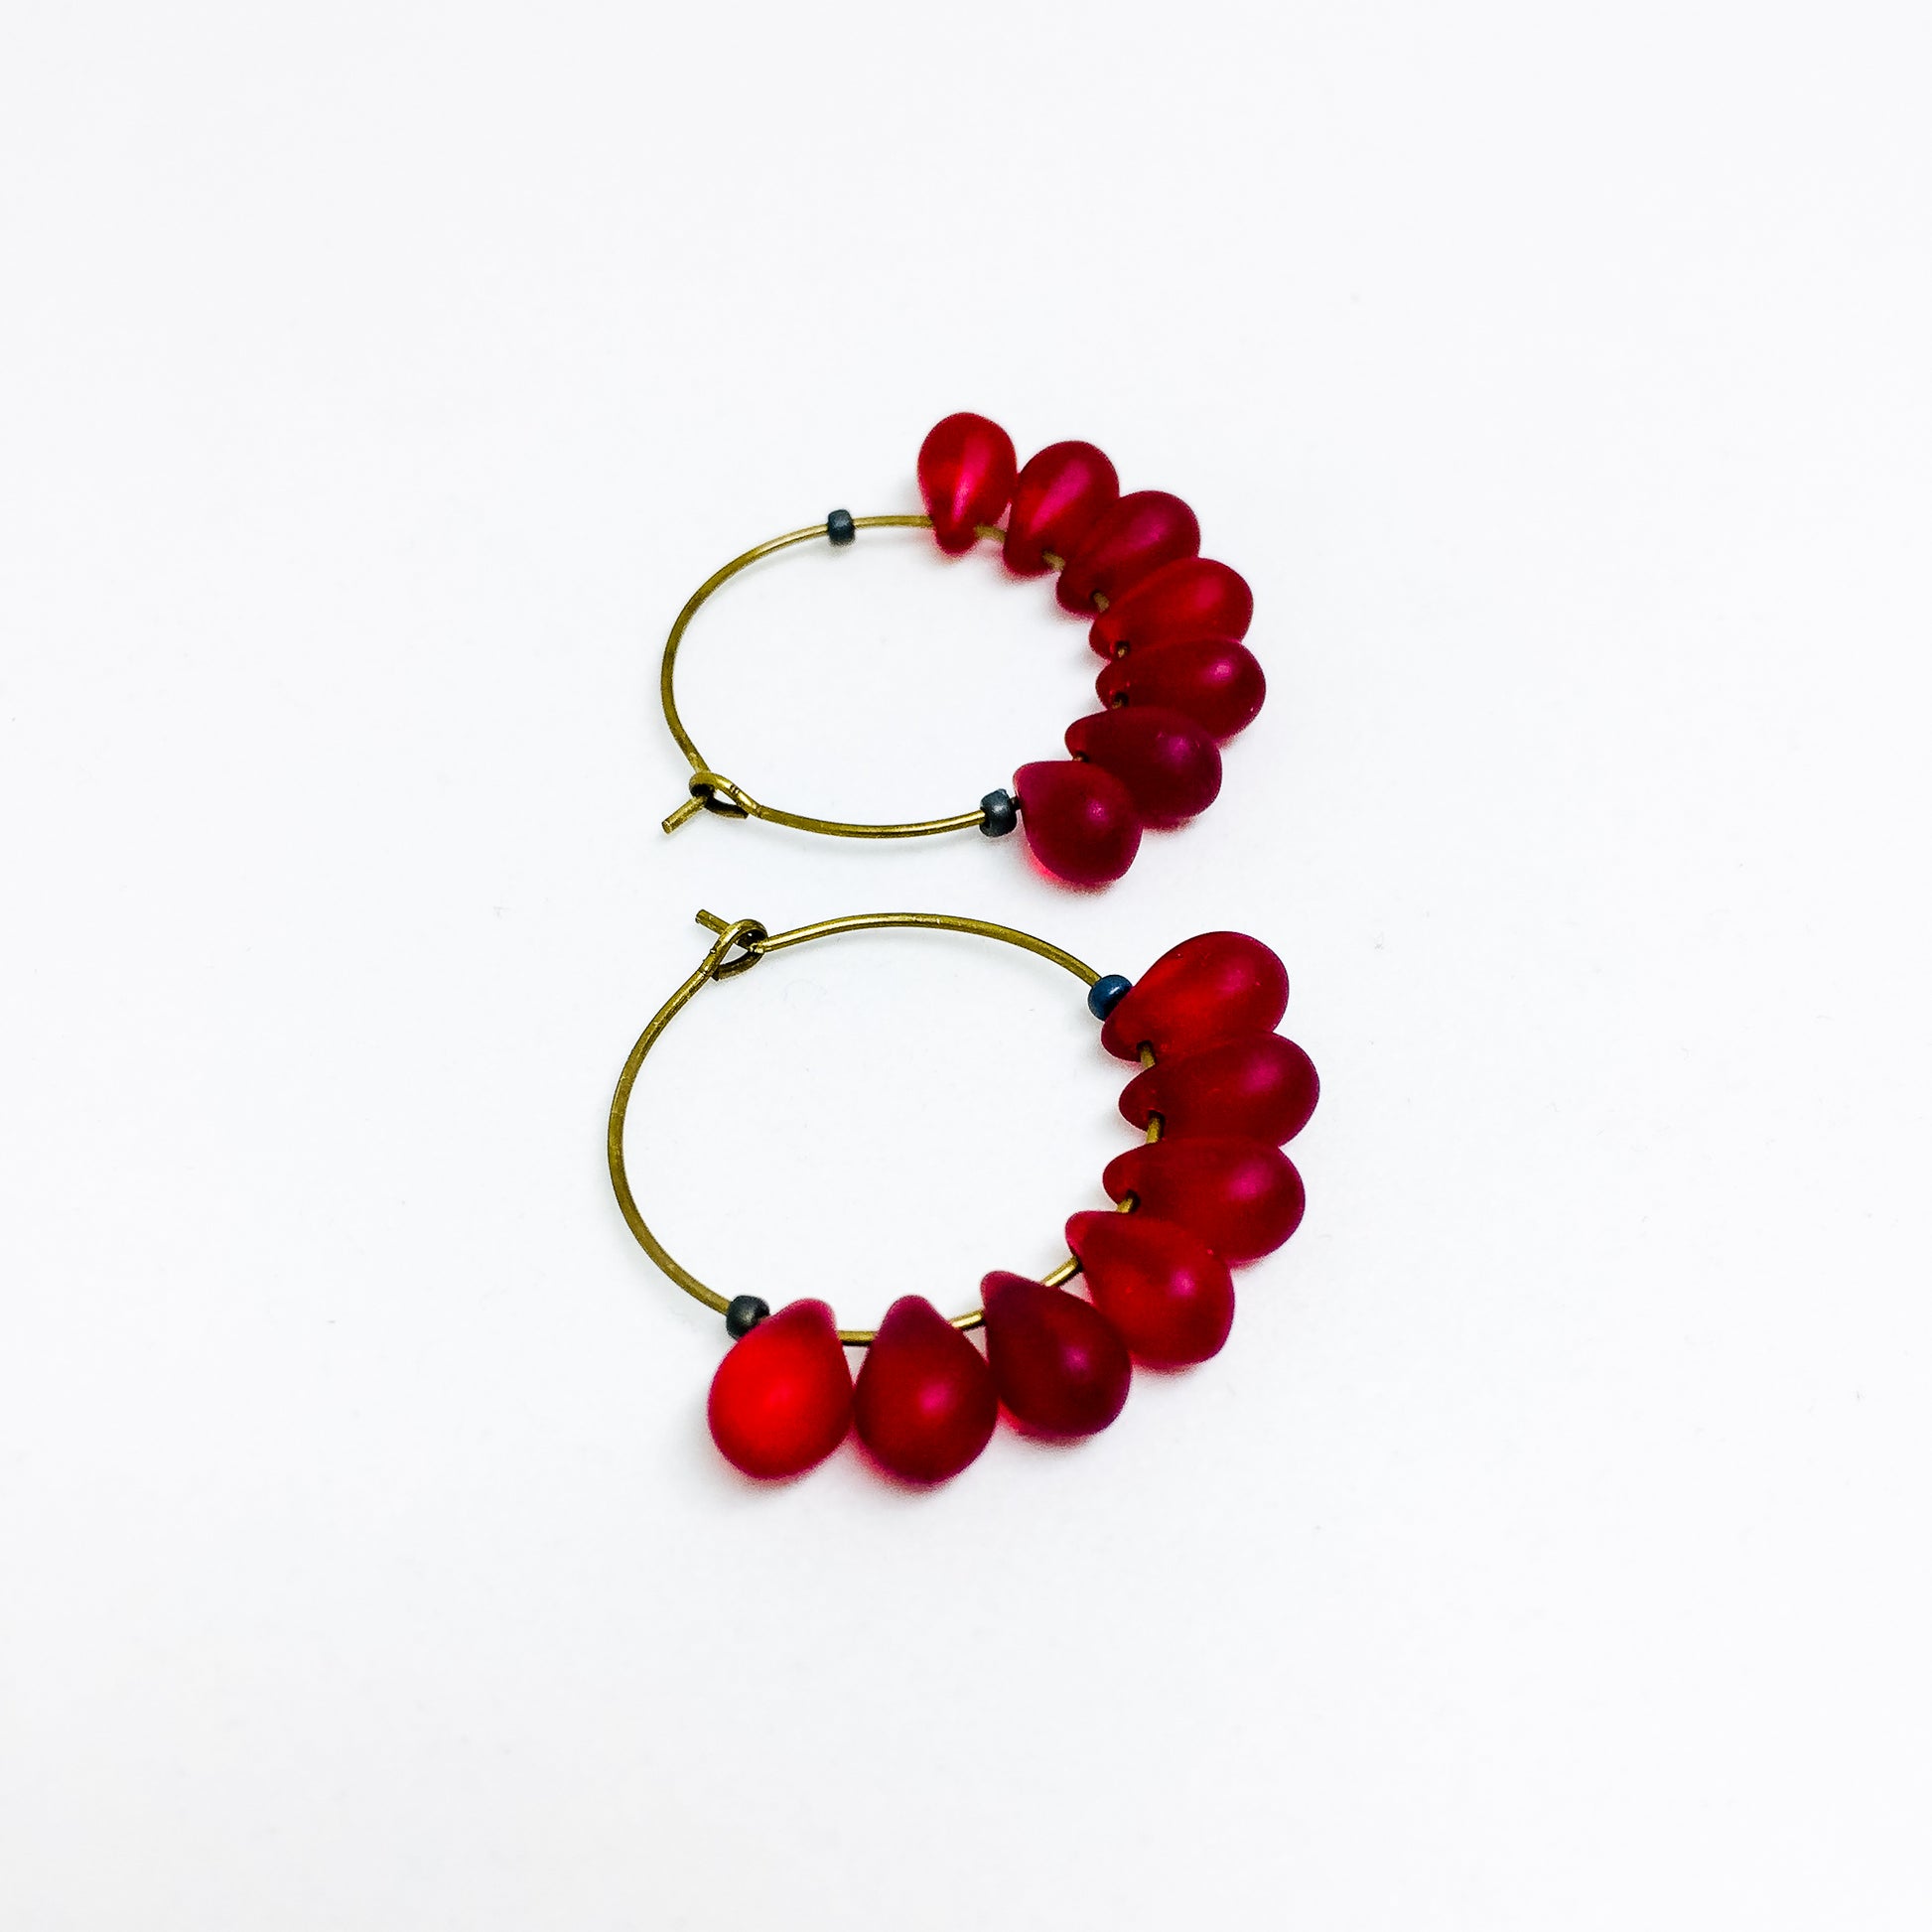 Dewdrop beaded glass hoop earrings in ruby red